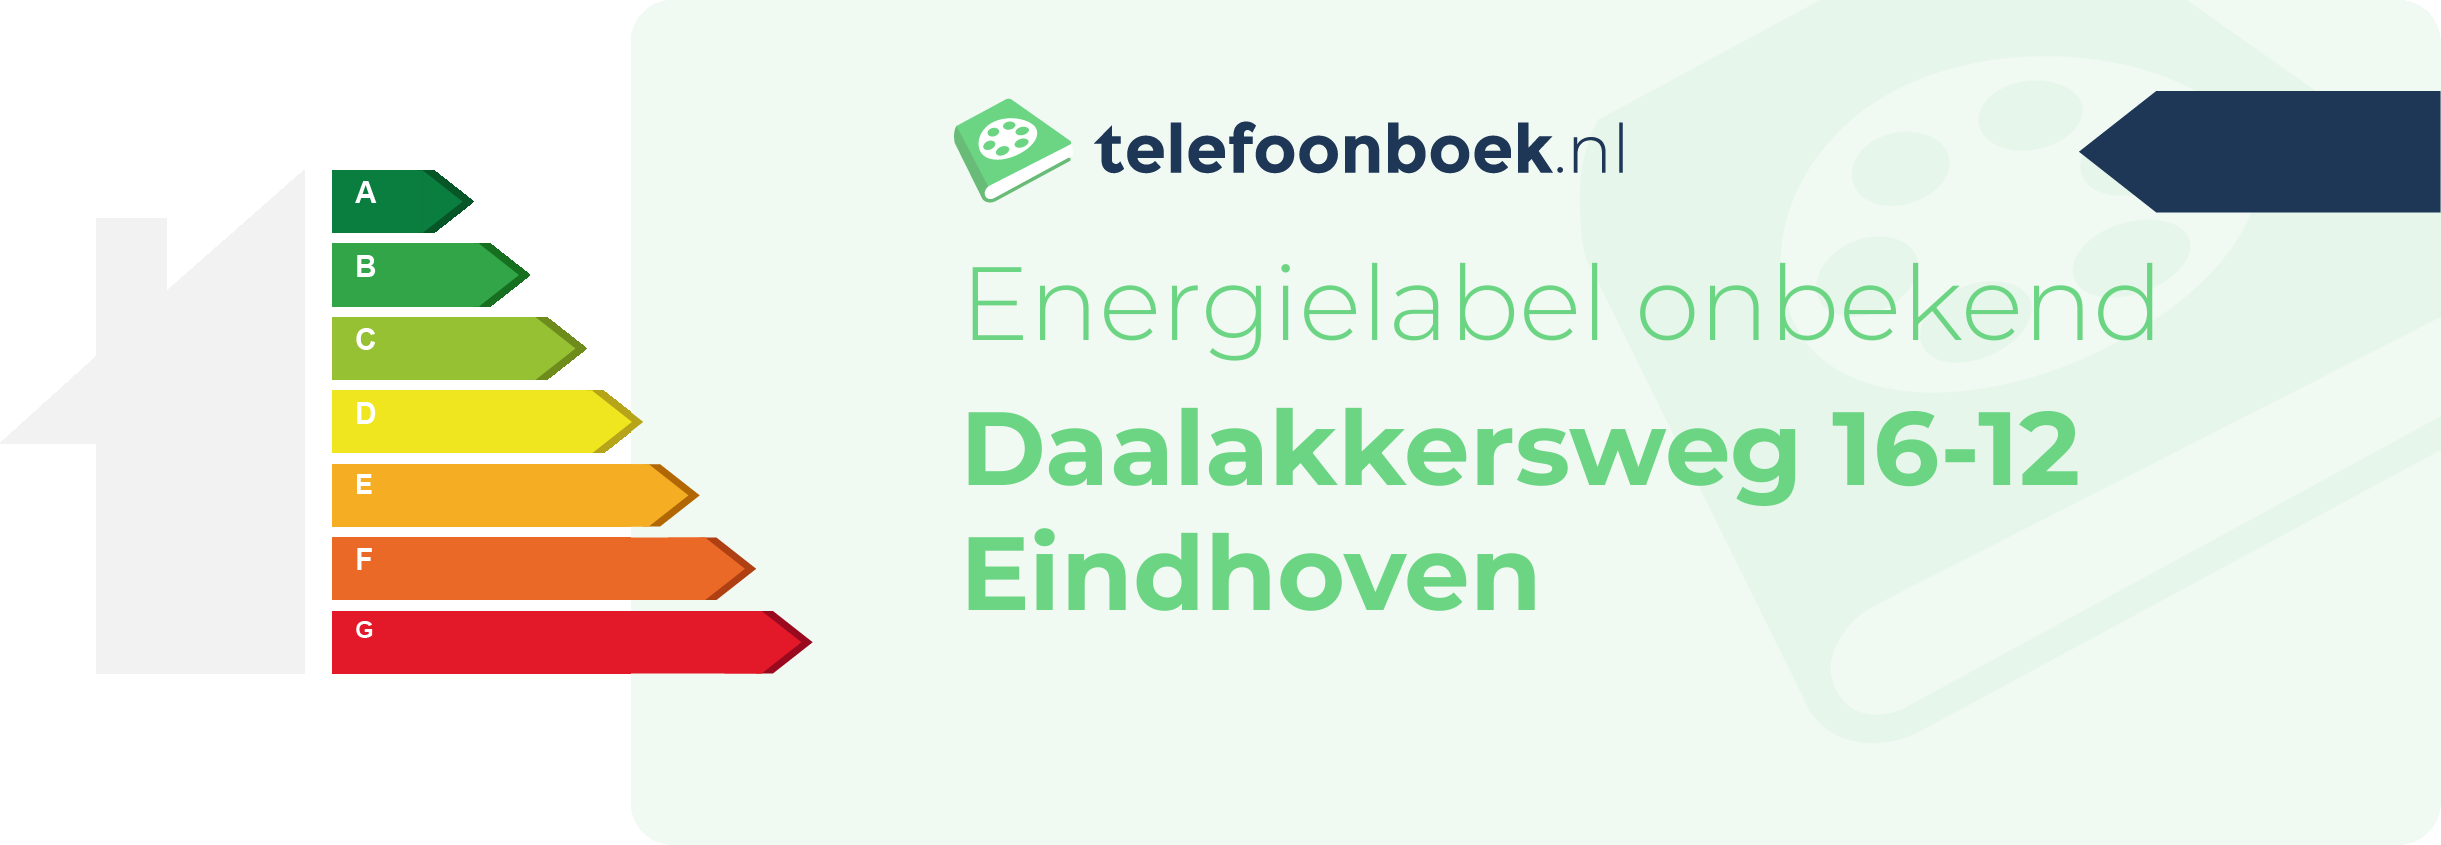 Energielabel Daalakkersweg 16-12 Eindhoven